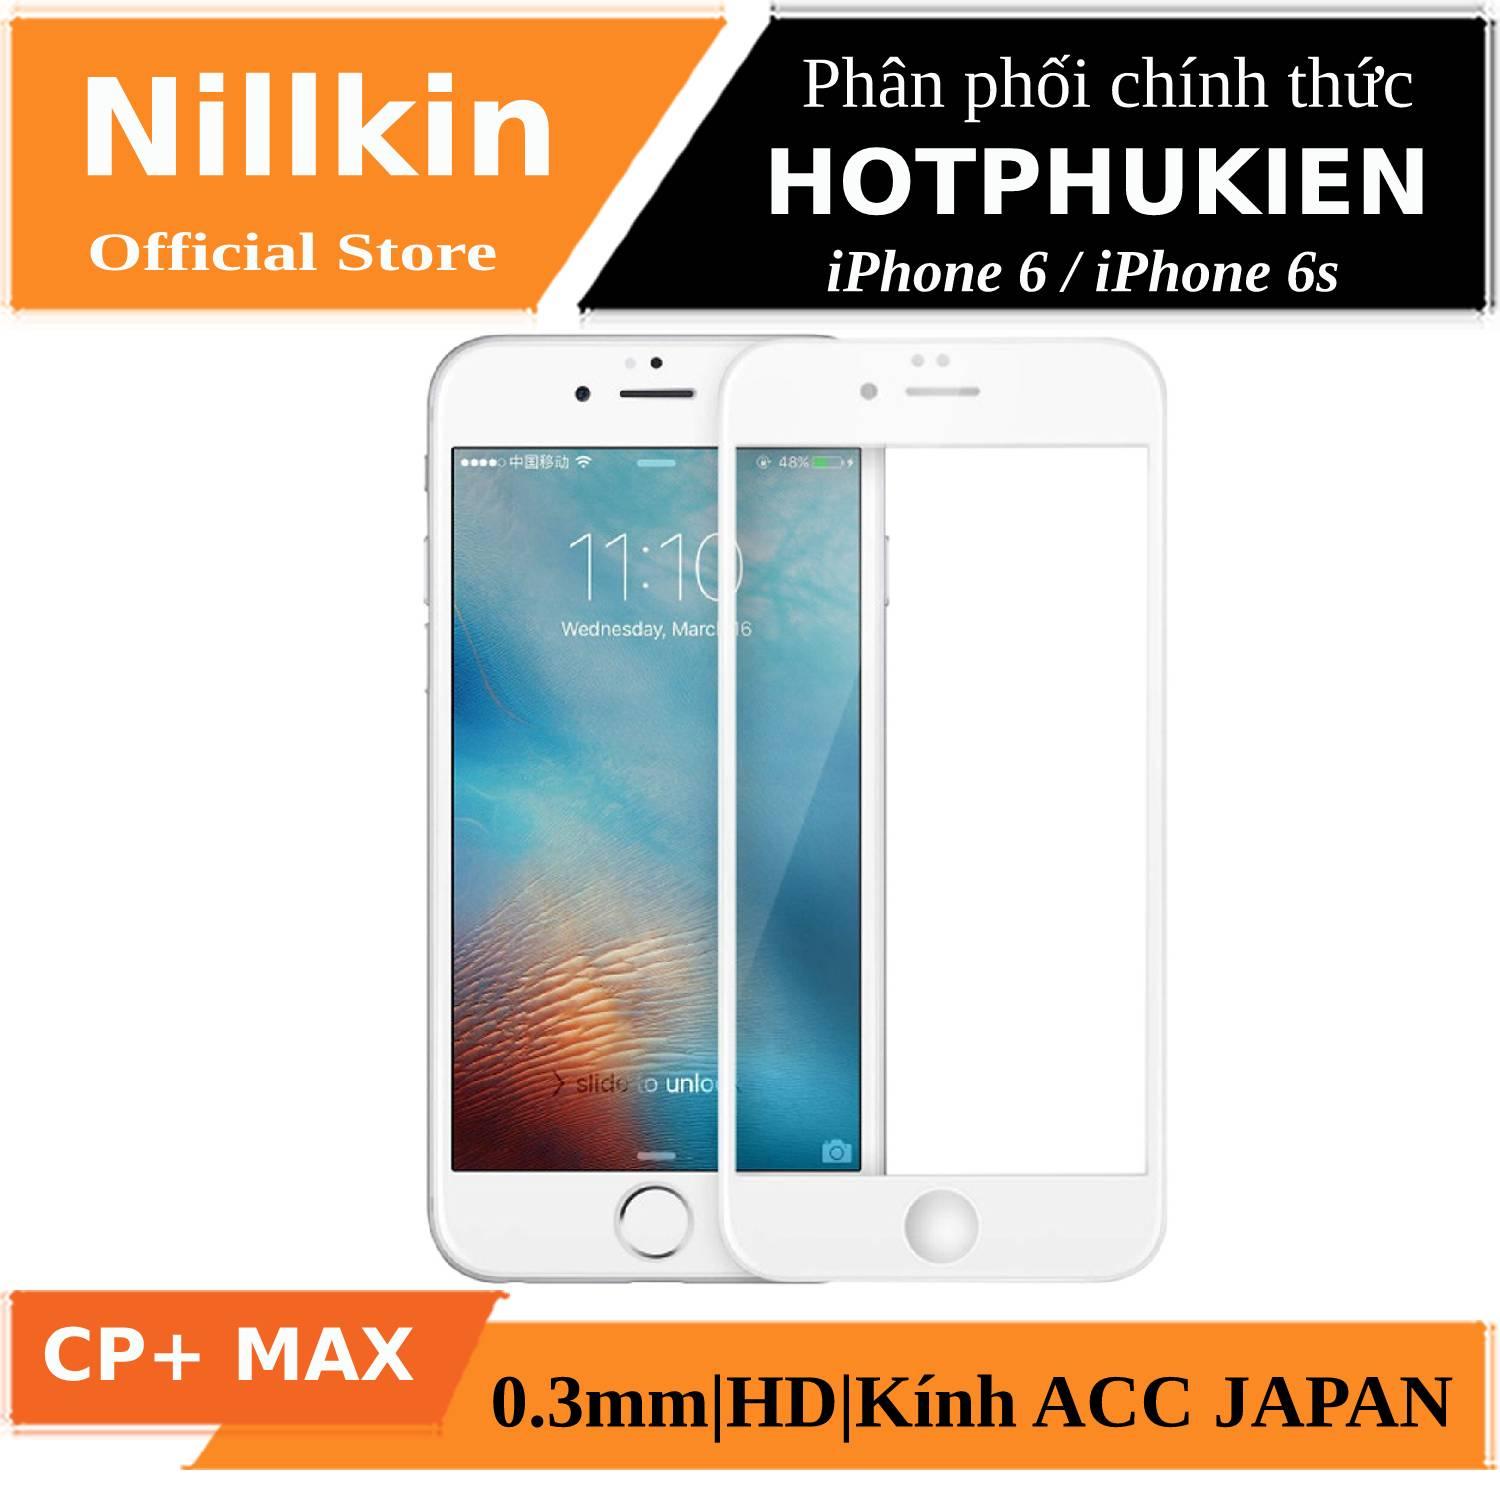 Miếng dán cường lực full 3D cho iPhone 6 / iPhone 6s hiệu Nillkin CP+ Max